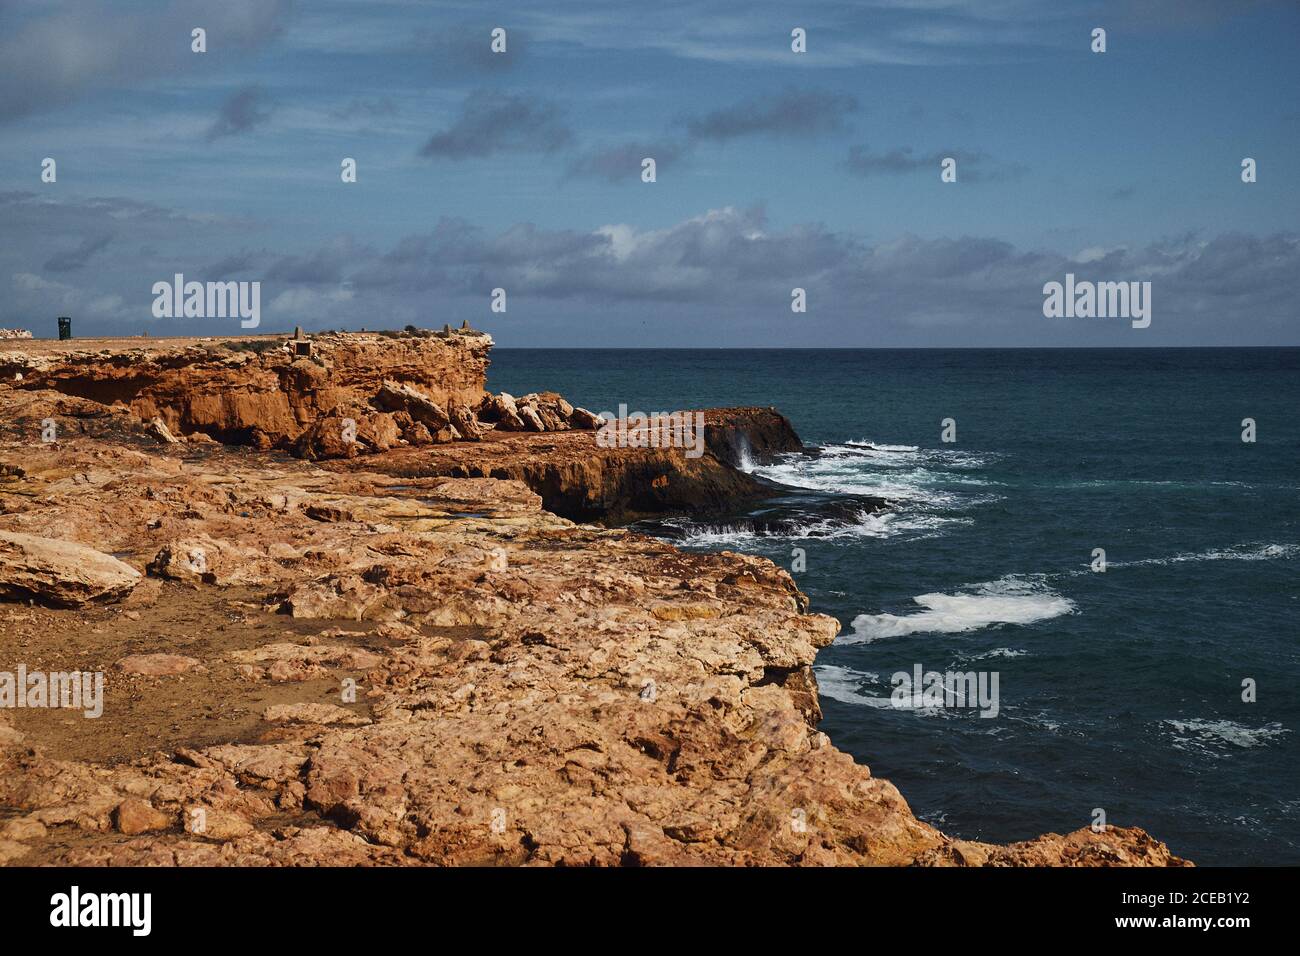 Côte rocheuse lavée par la mer mousseuse bleue sur fond de ciel avec nuages Banque D'Images